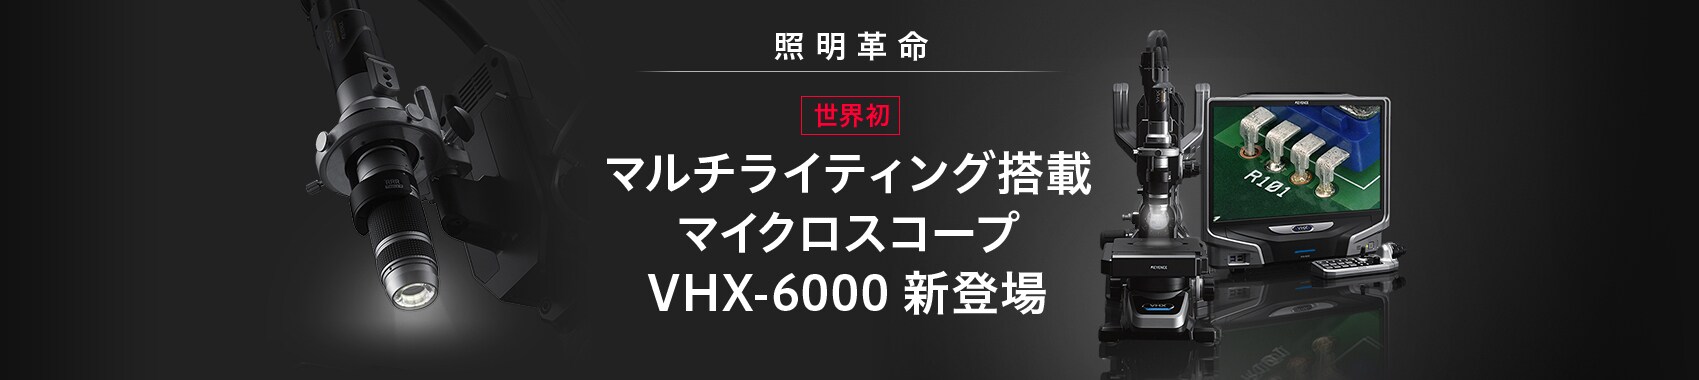 照明革命 世界初 マルチライティング搭載 マイクロスコープ VHX-6000 新登場